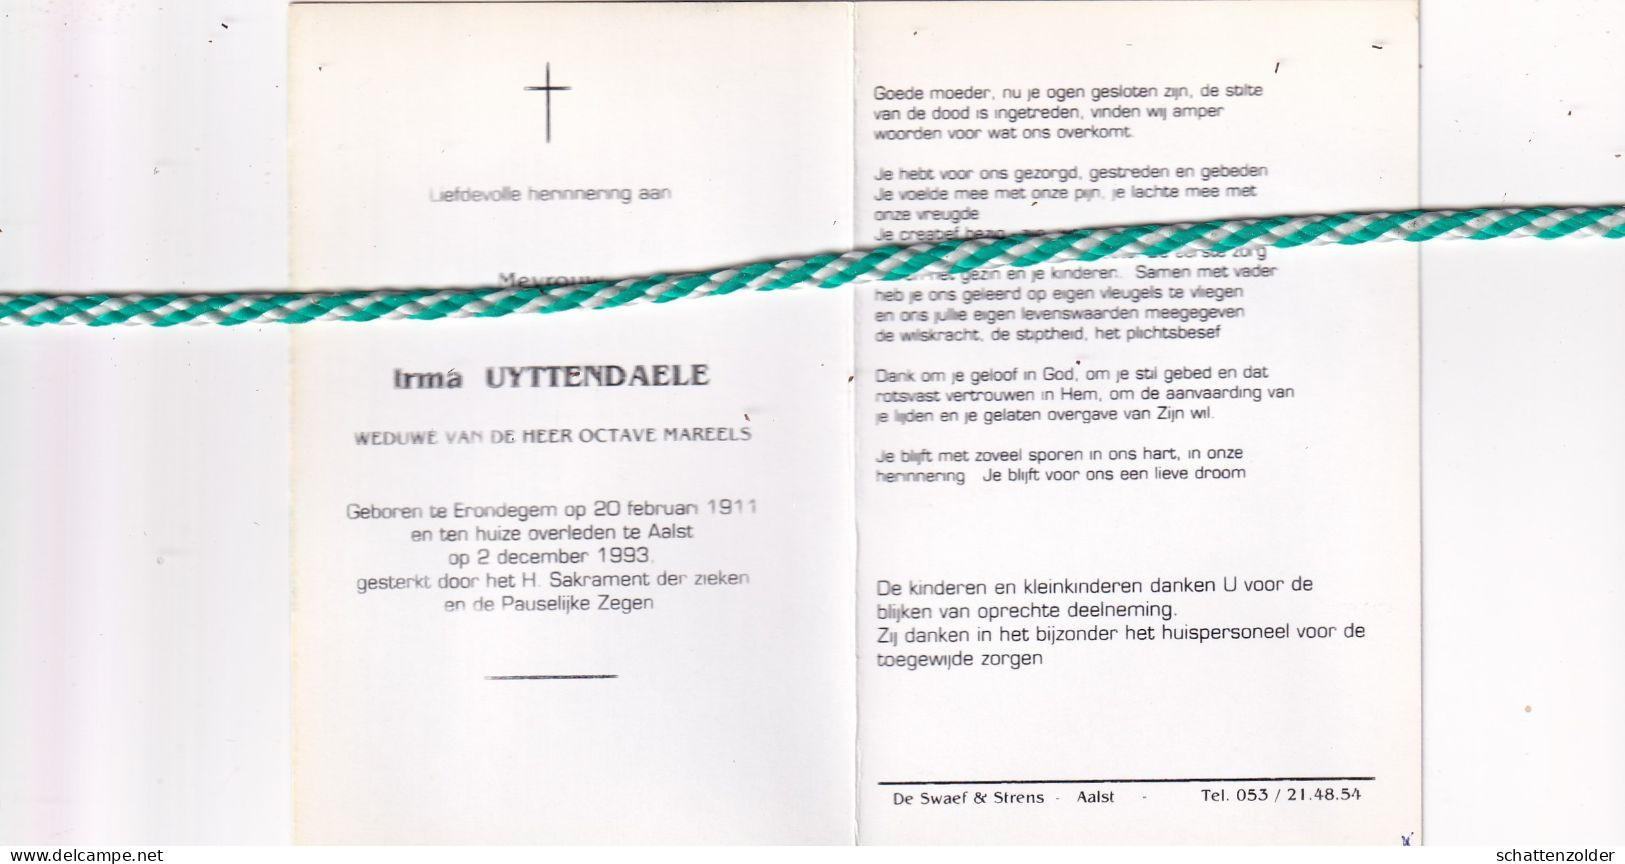 Irma Uyttendaele-Mareels, Erondegem 1911, Aalst 1993. Foto - Overlijden